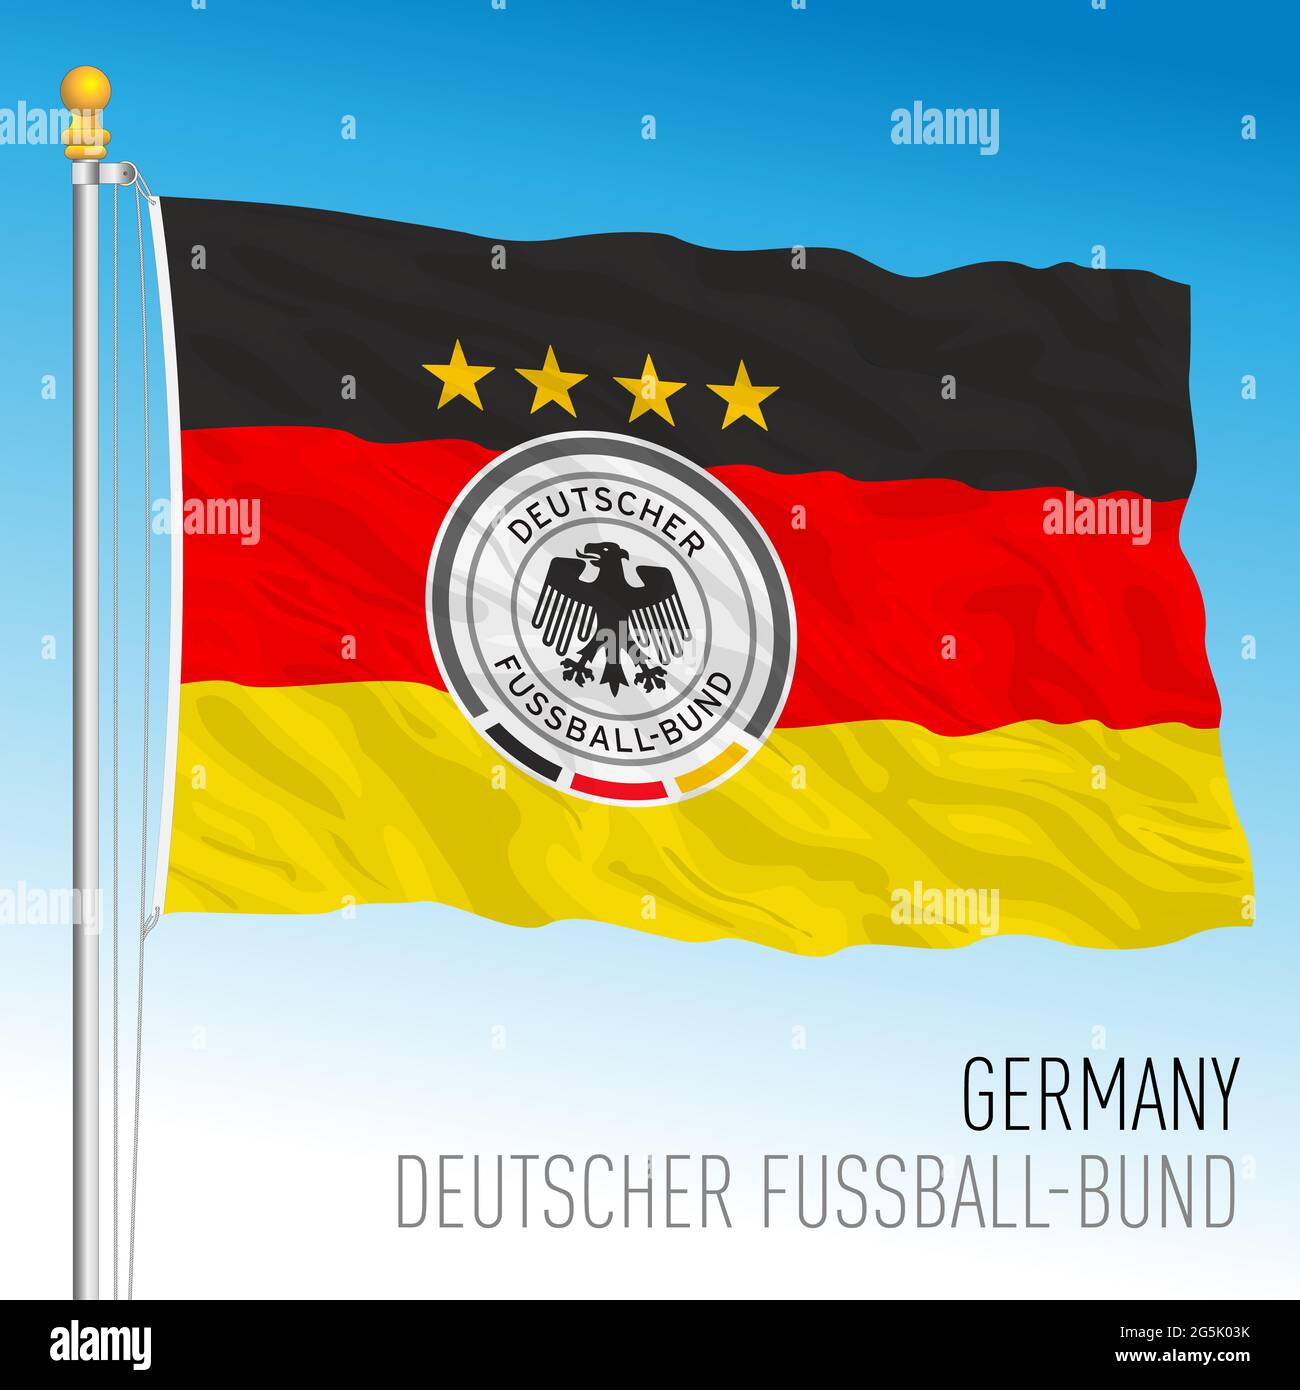 BERLÍN, ALEMANIA, junio de 2021 - Bandera alemana con el logotipo de la federación Alemana de Fútbol para el campeonato europeo 2021 Foto de stock